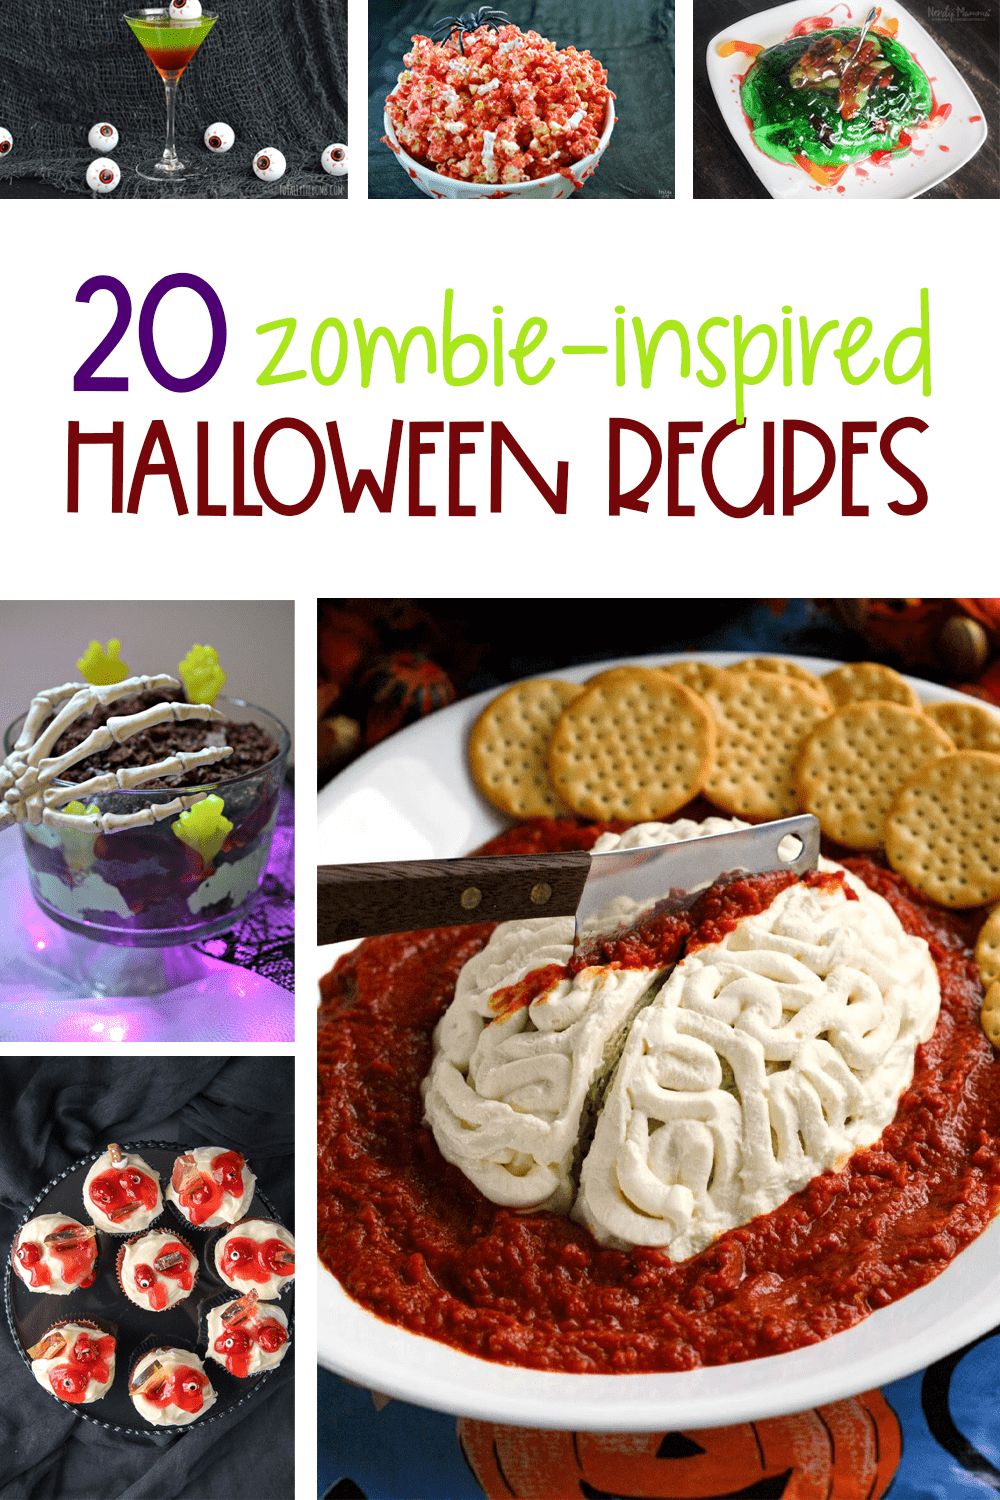 Halloween Zombie Recipes | Zombie Recipes | Halloween Treats | Spooky Halloween Treats | Scary Halloween Treats | Easy Halloween Treats | #food #halloween #zombie #creepy #easy #delicious #fun #playful #uniquegifter